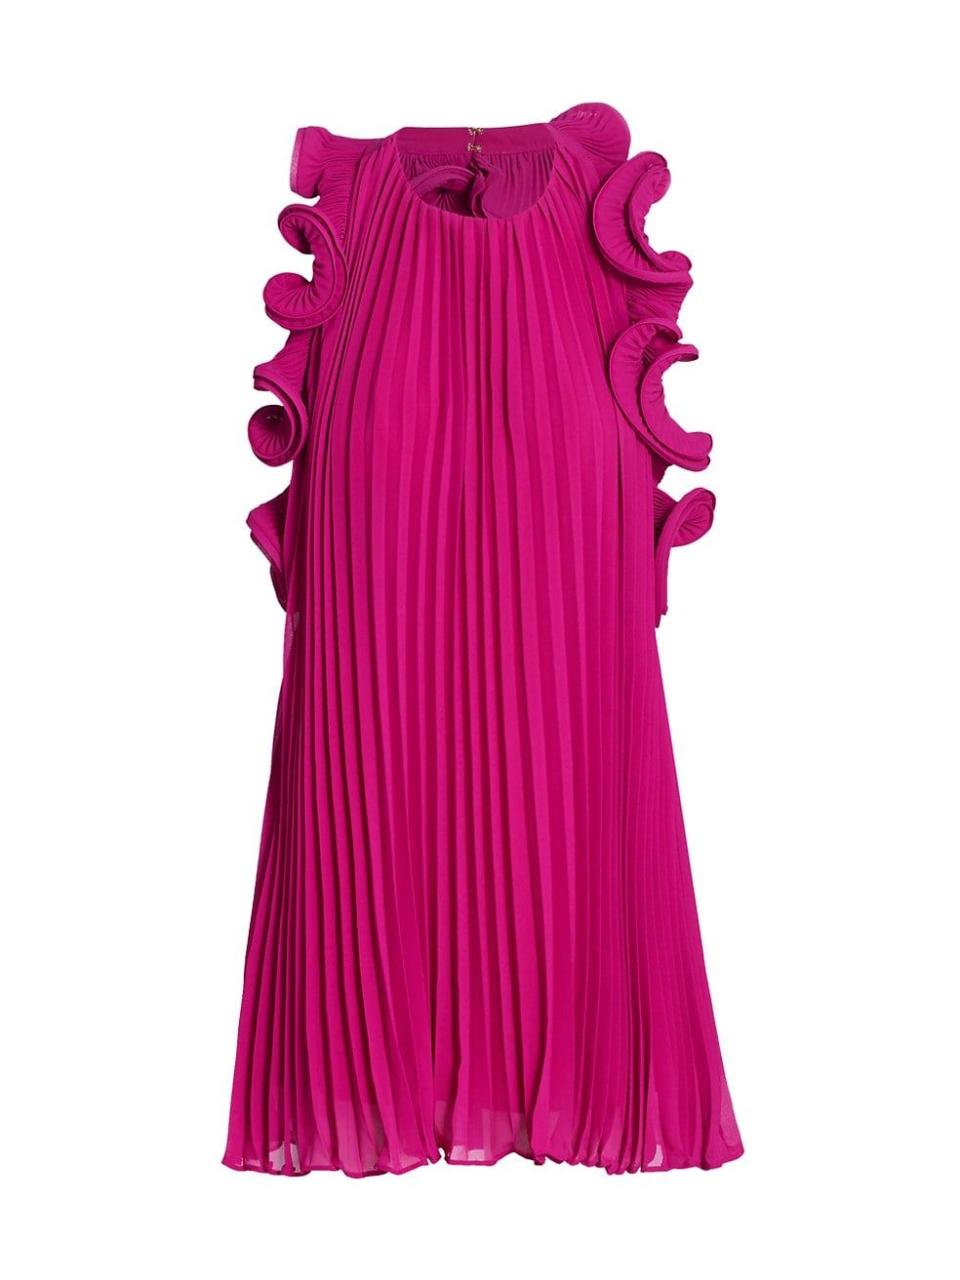 11) Mimi Ruffled Mini Dress